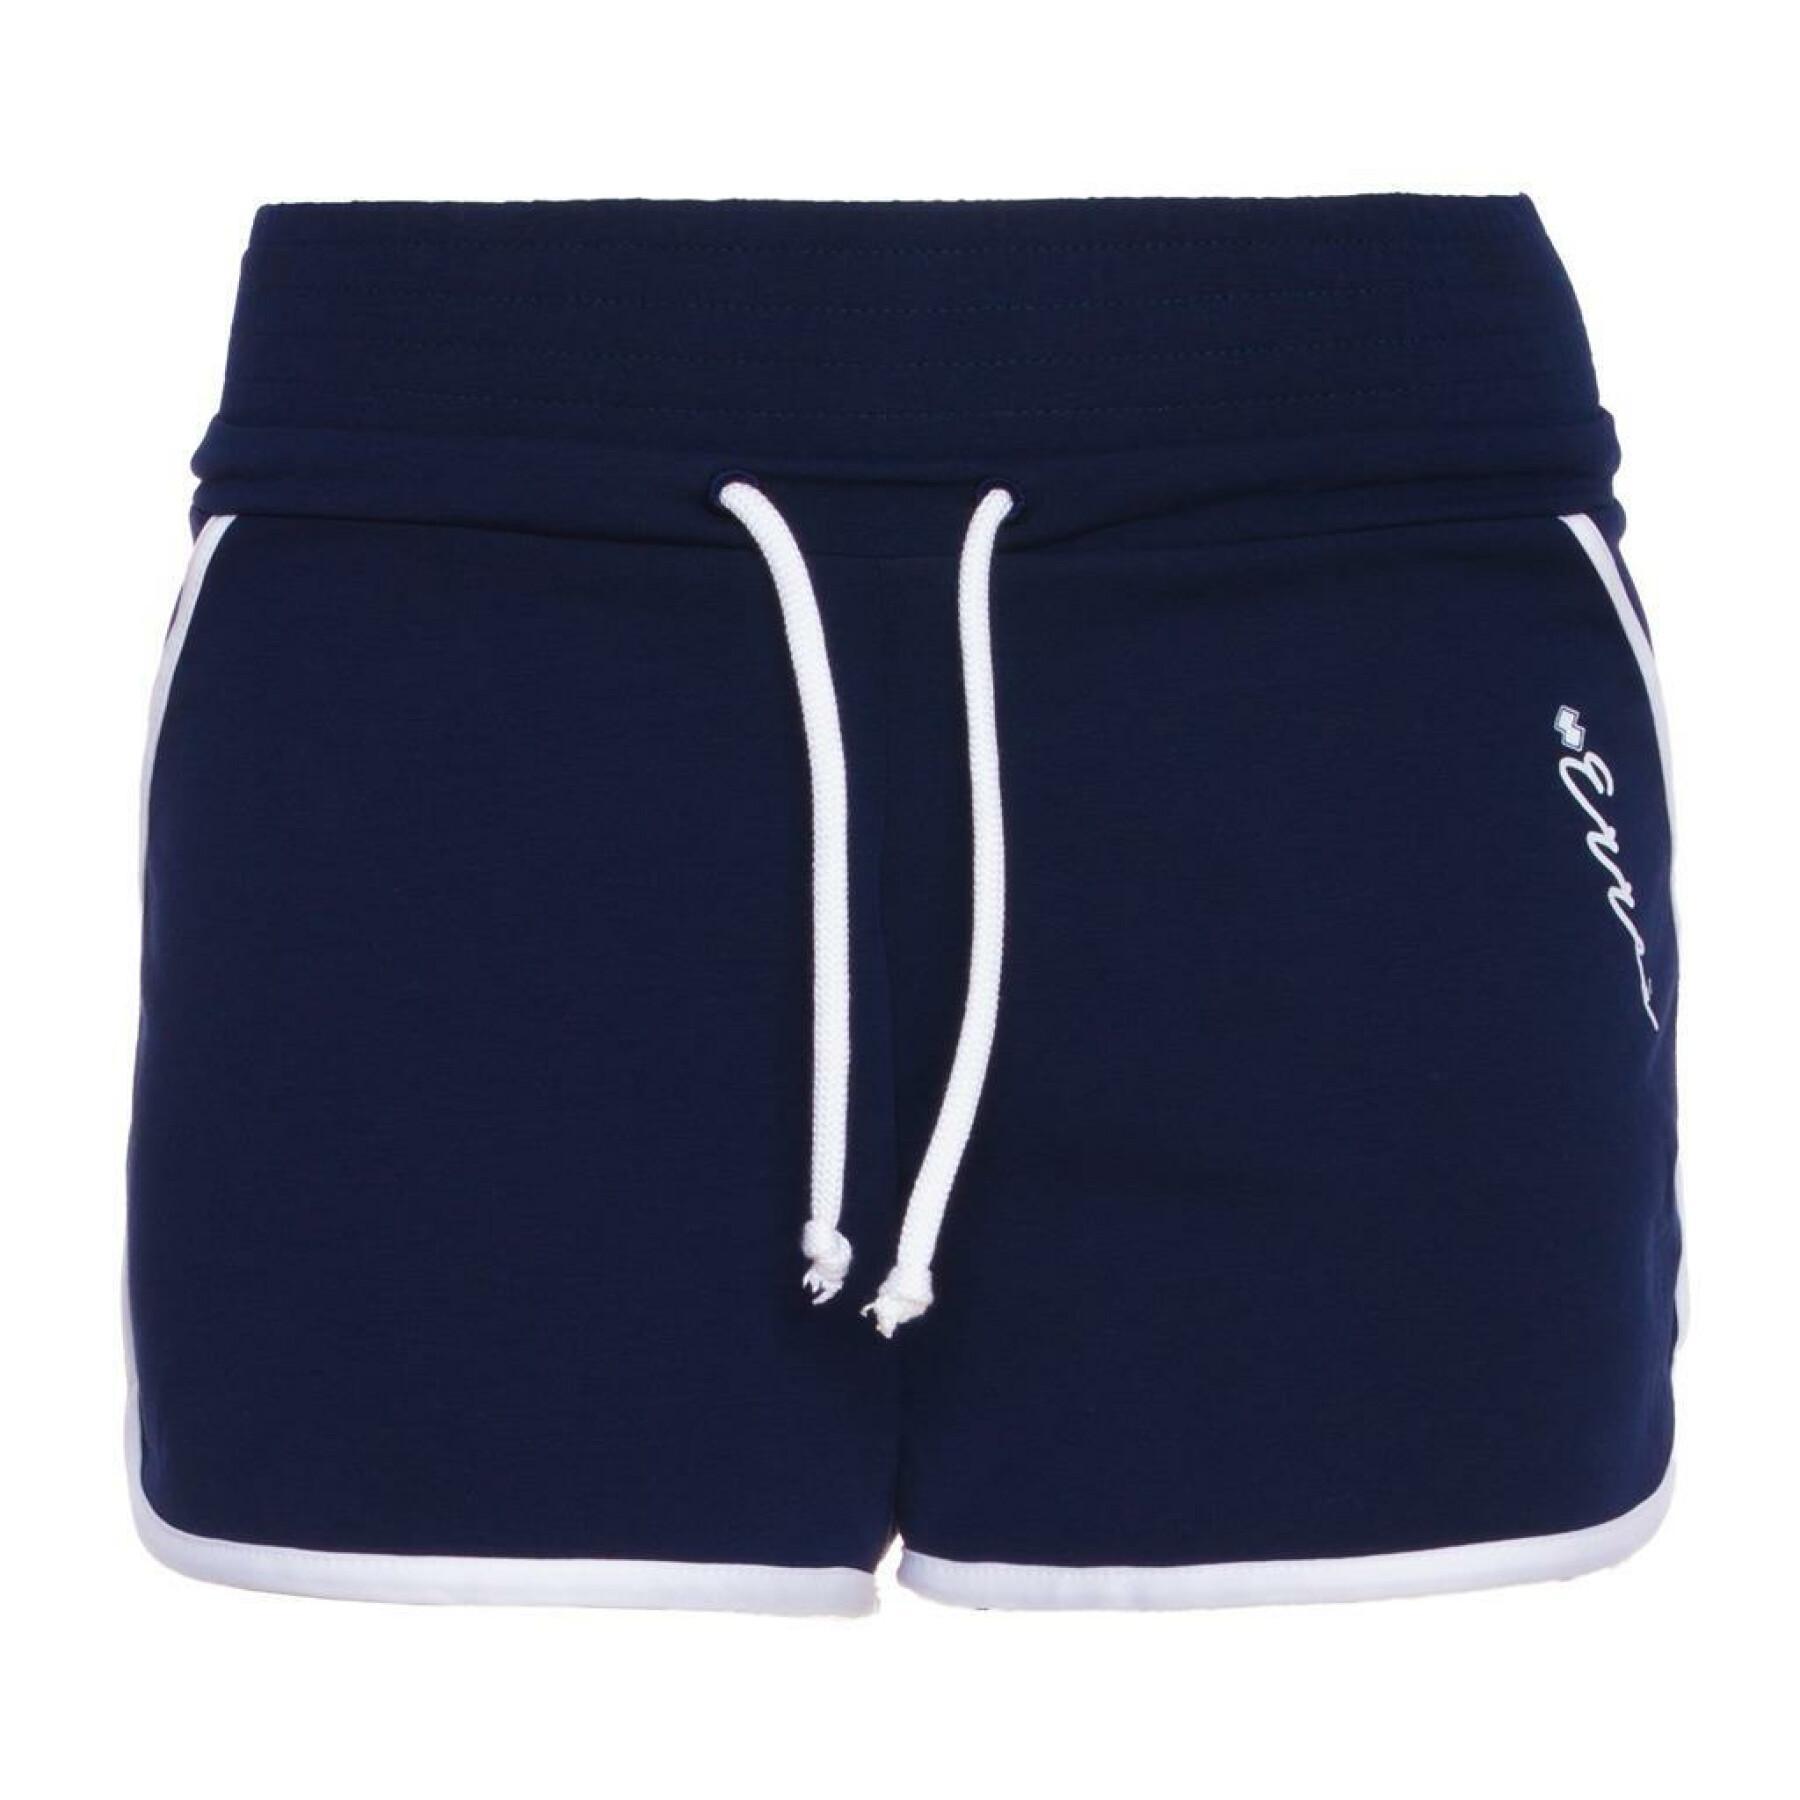 Women's shorts Errea essential